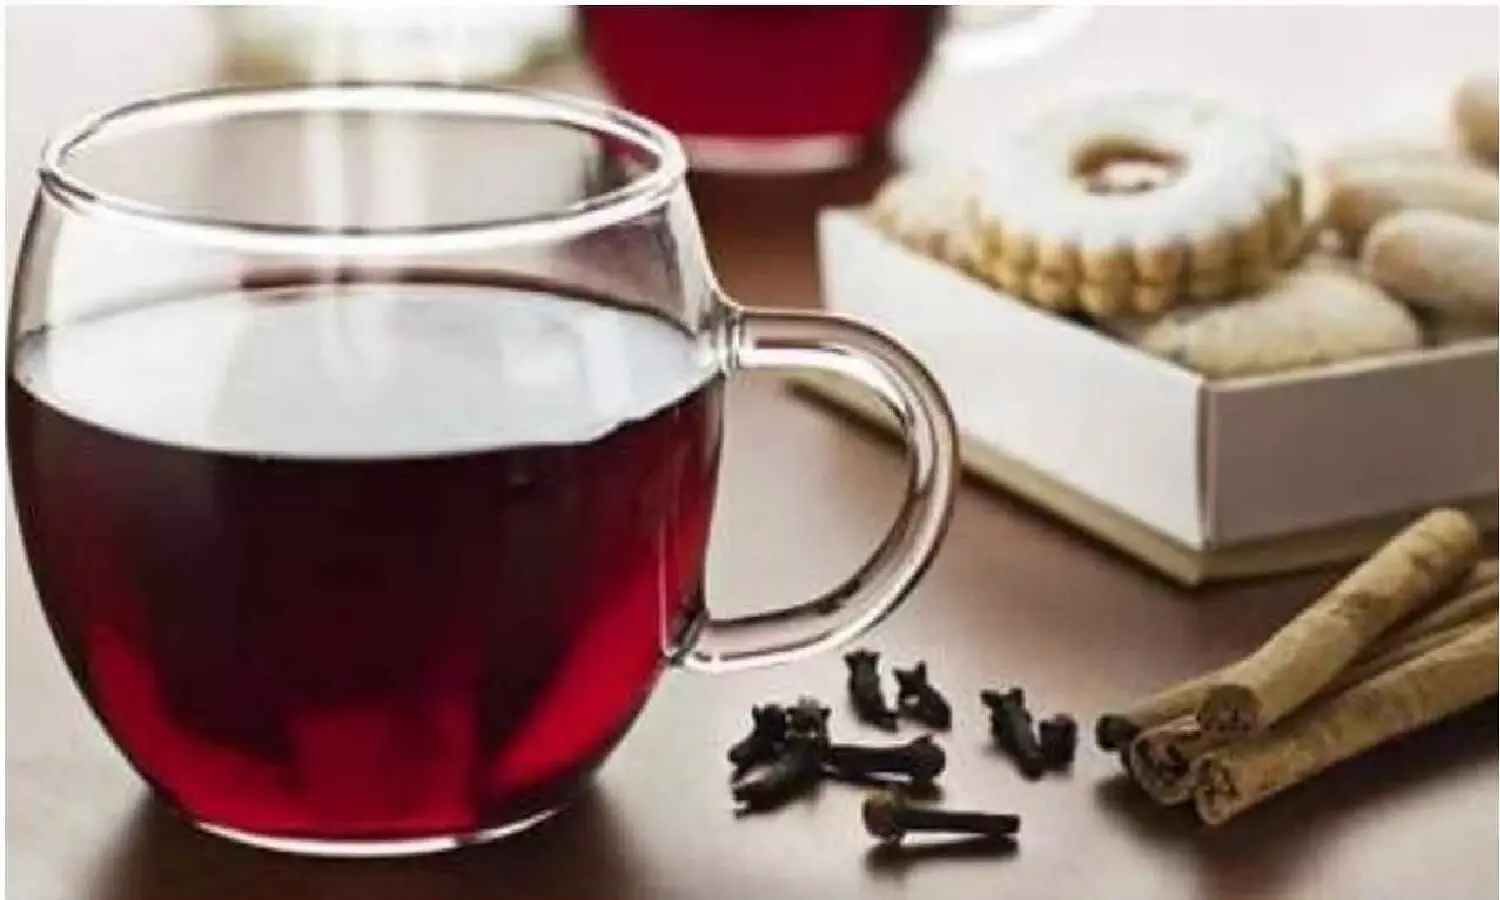 Clove Tea In Winter: ठंड में लौंग की चाय पीने के फायदे जान उछल पड़ेंगे आप? जानिए!